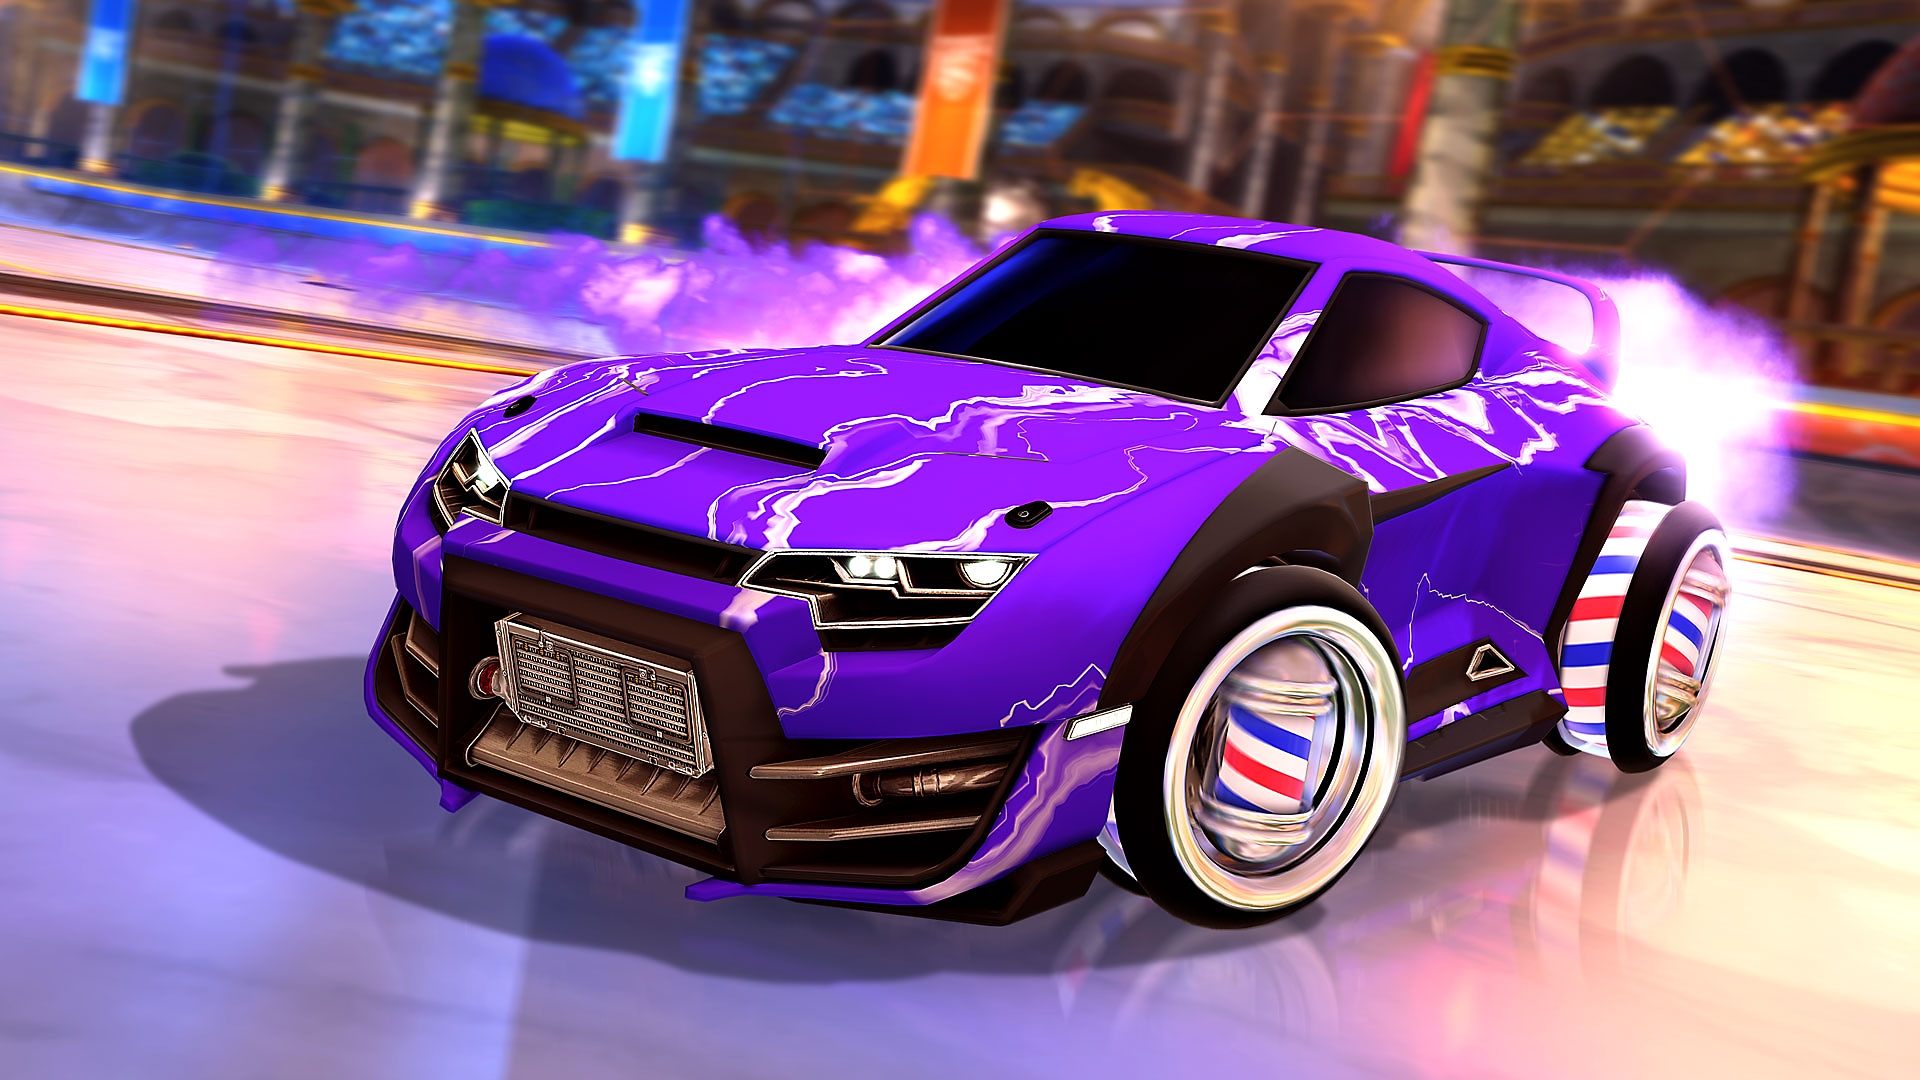 A Rocket League képernyőképe, rajta egy lila autó